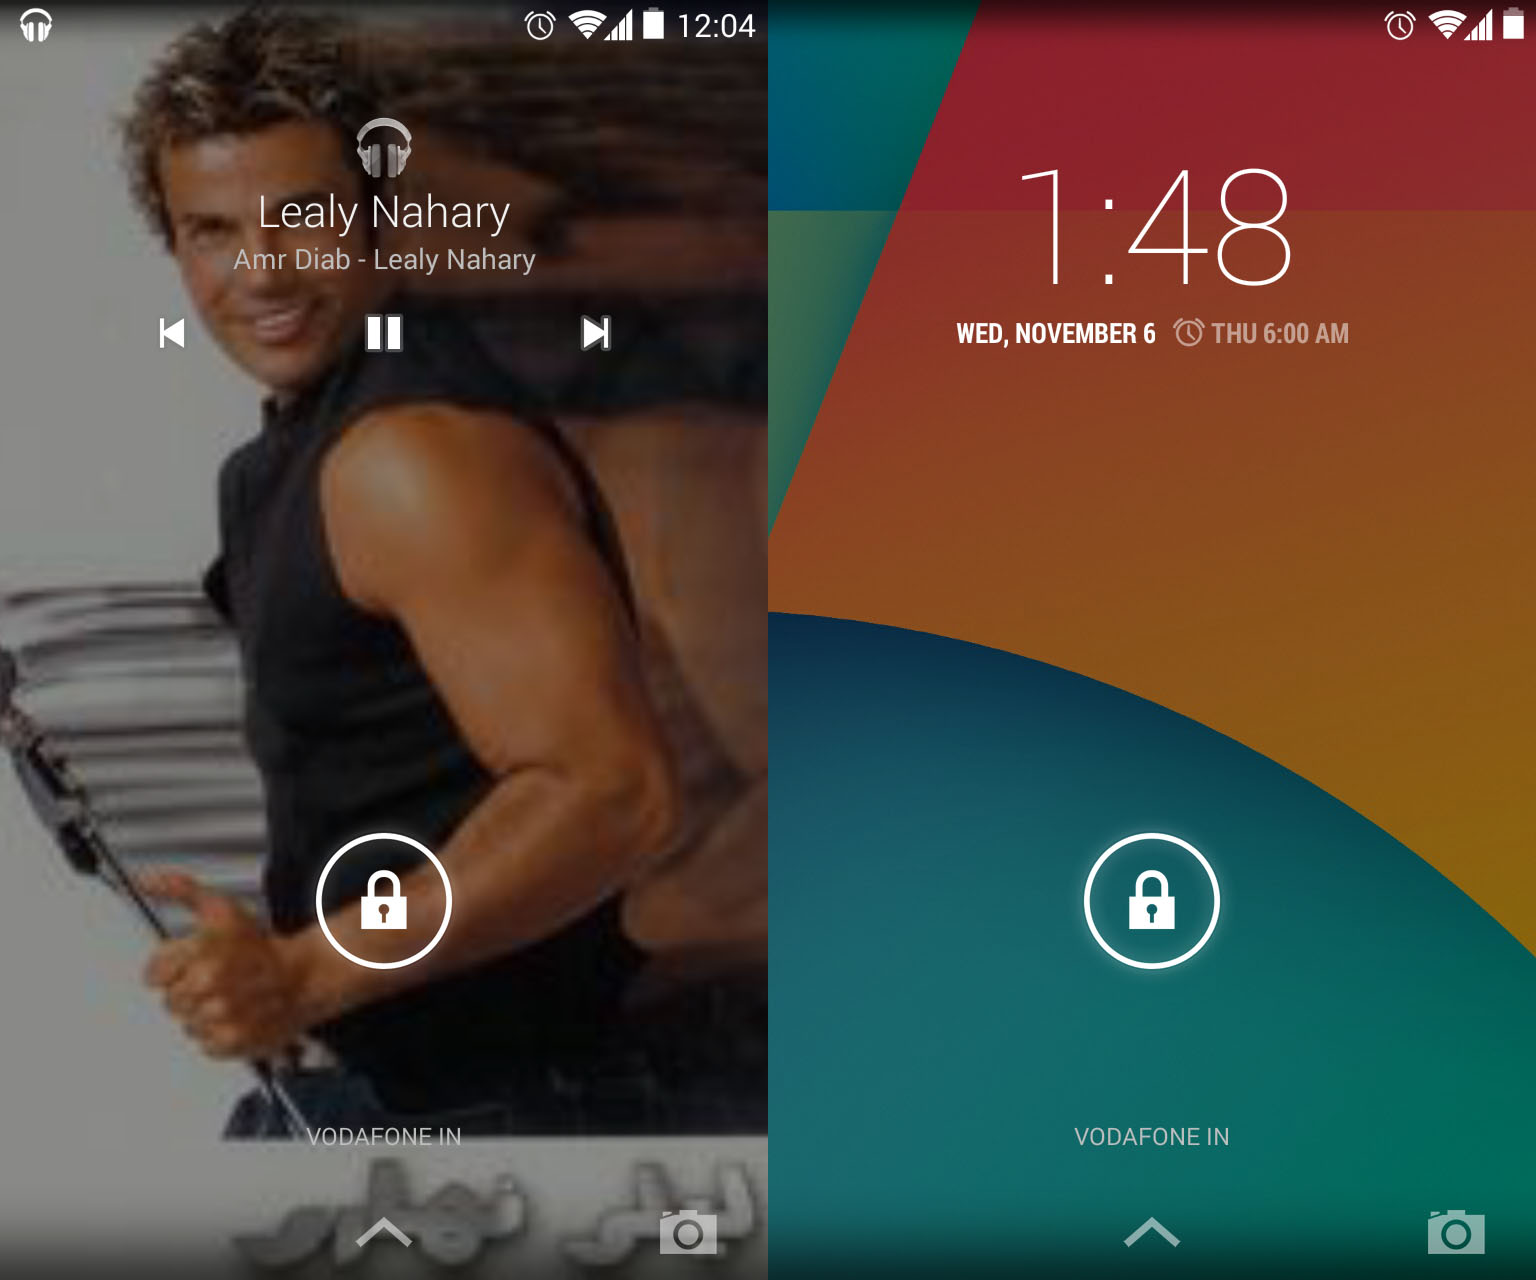 android kitkat interface